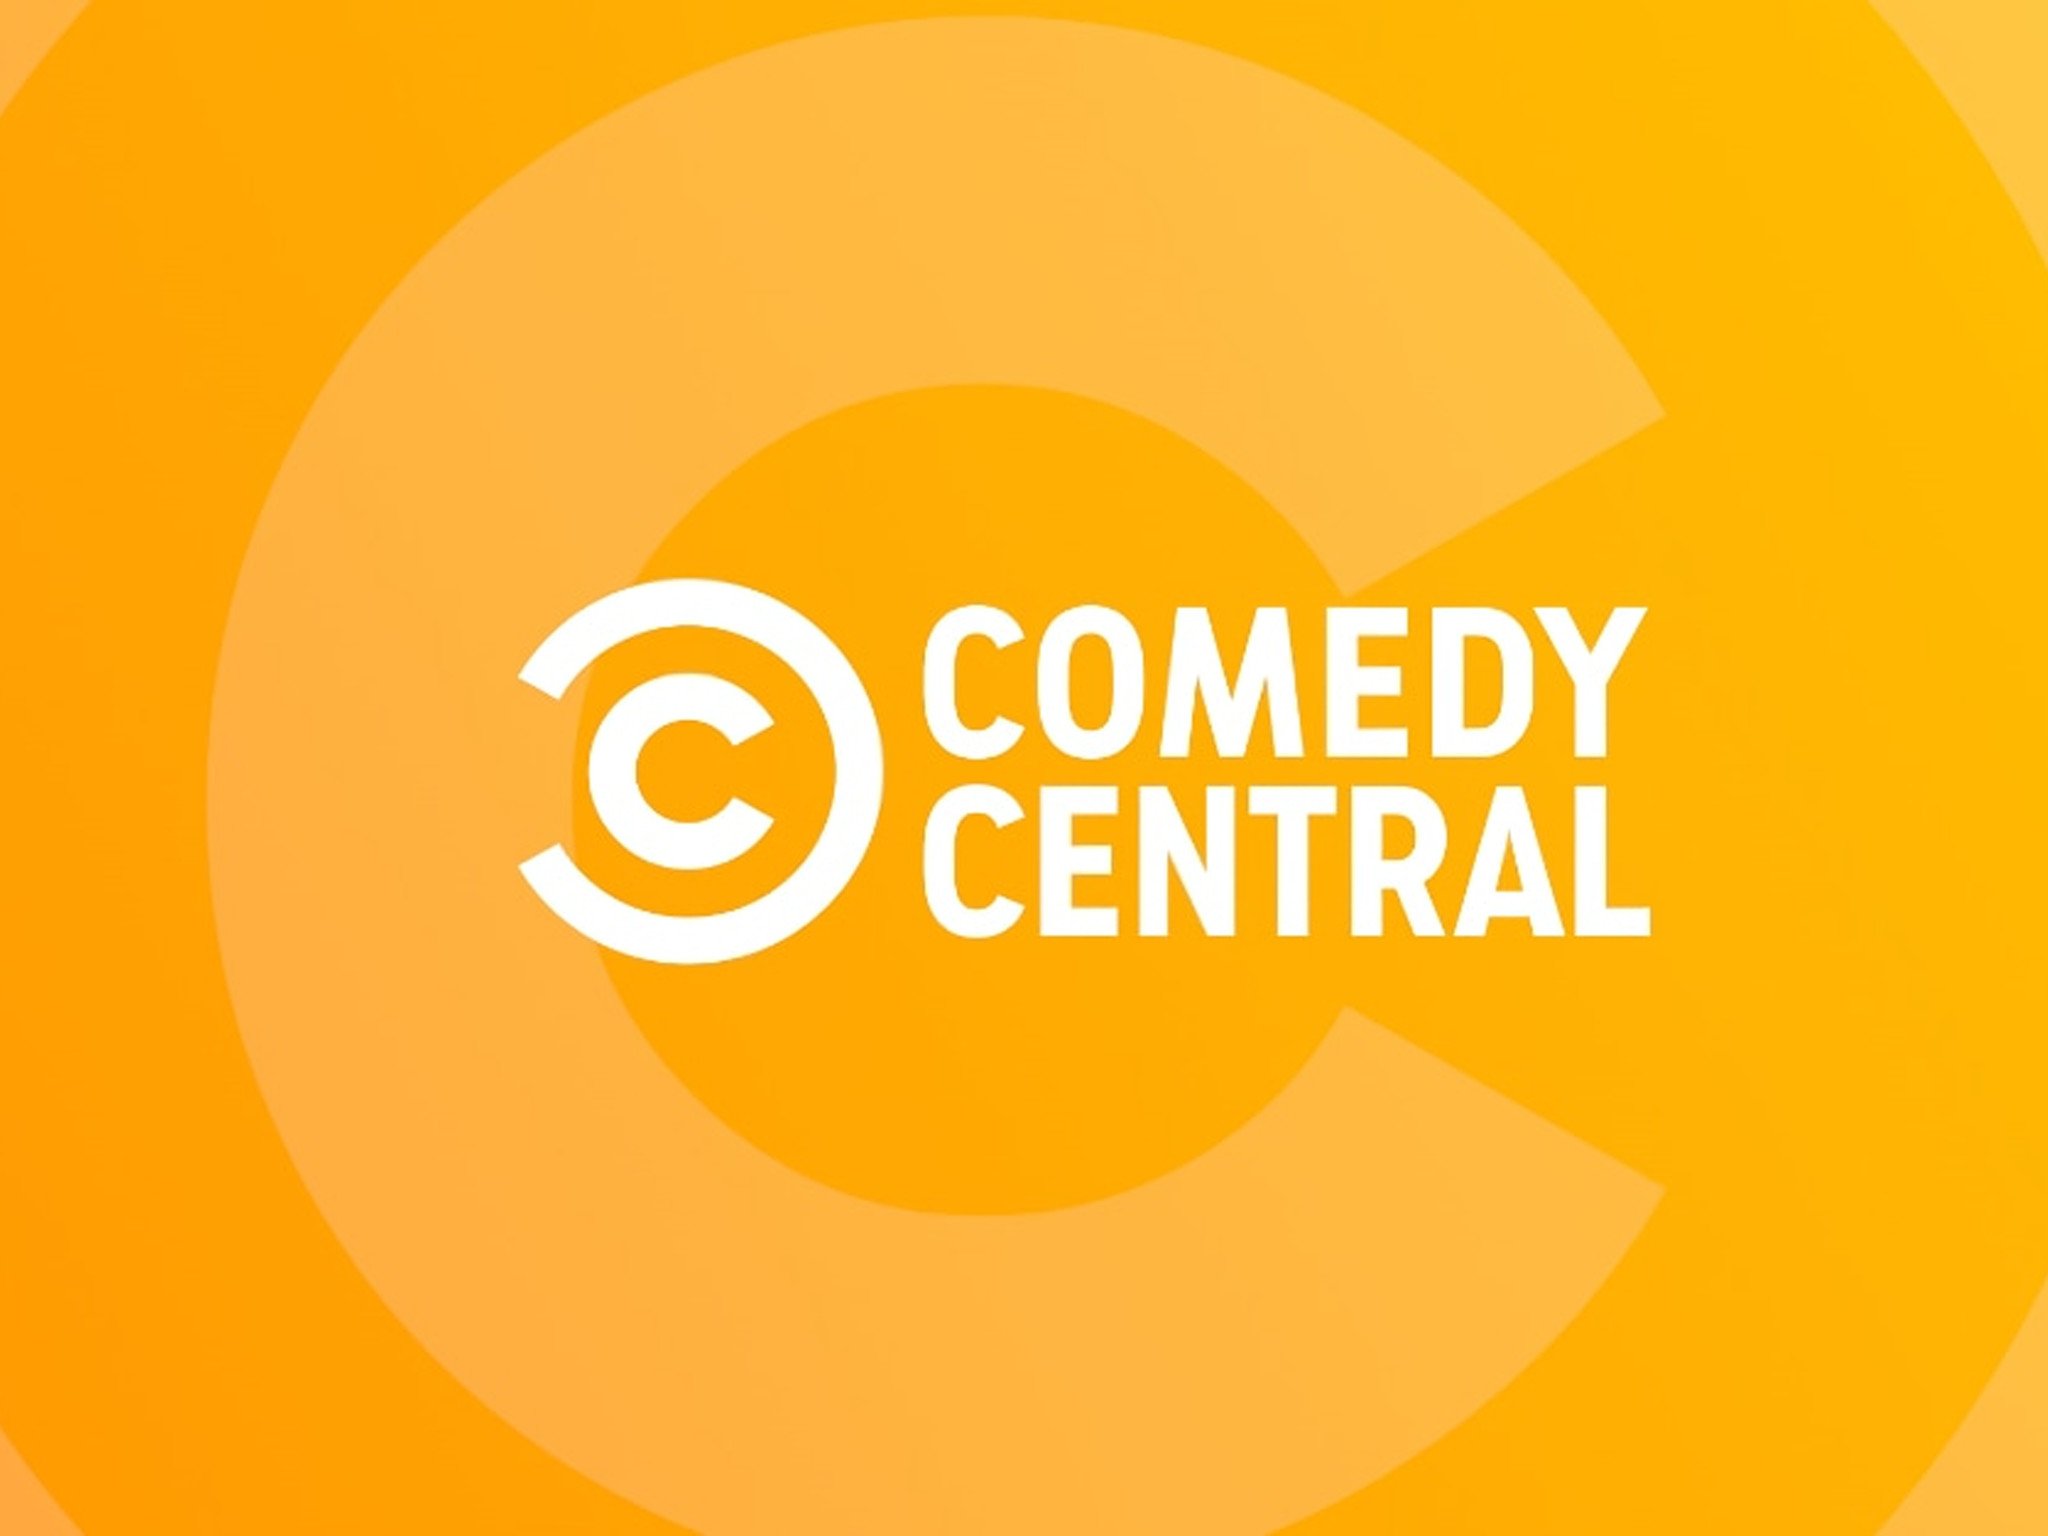 Телеканал камеди. Comedy Central. Comedy Central канал. ТВ каналы comedy Central. Телеканал комедия логотип.